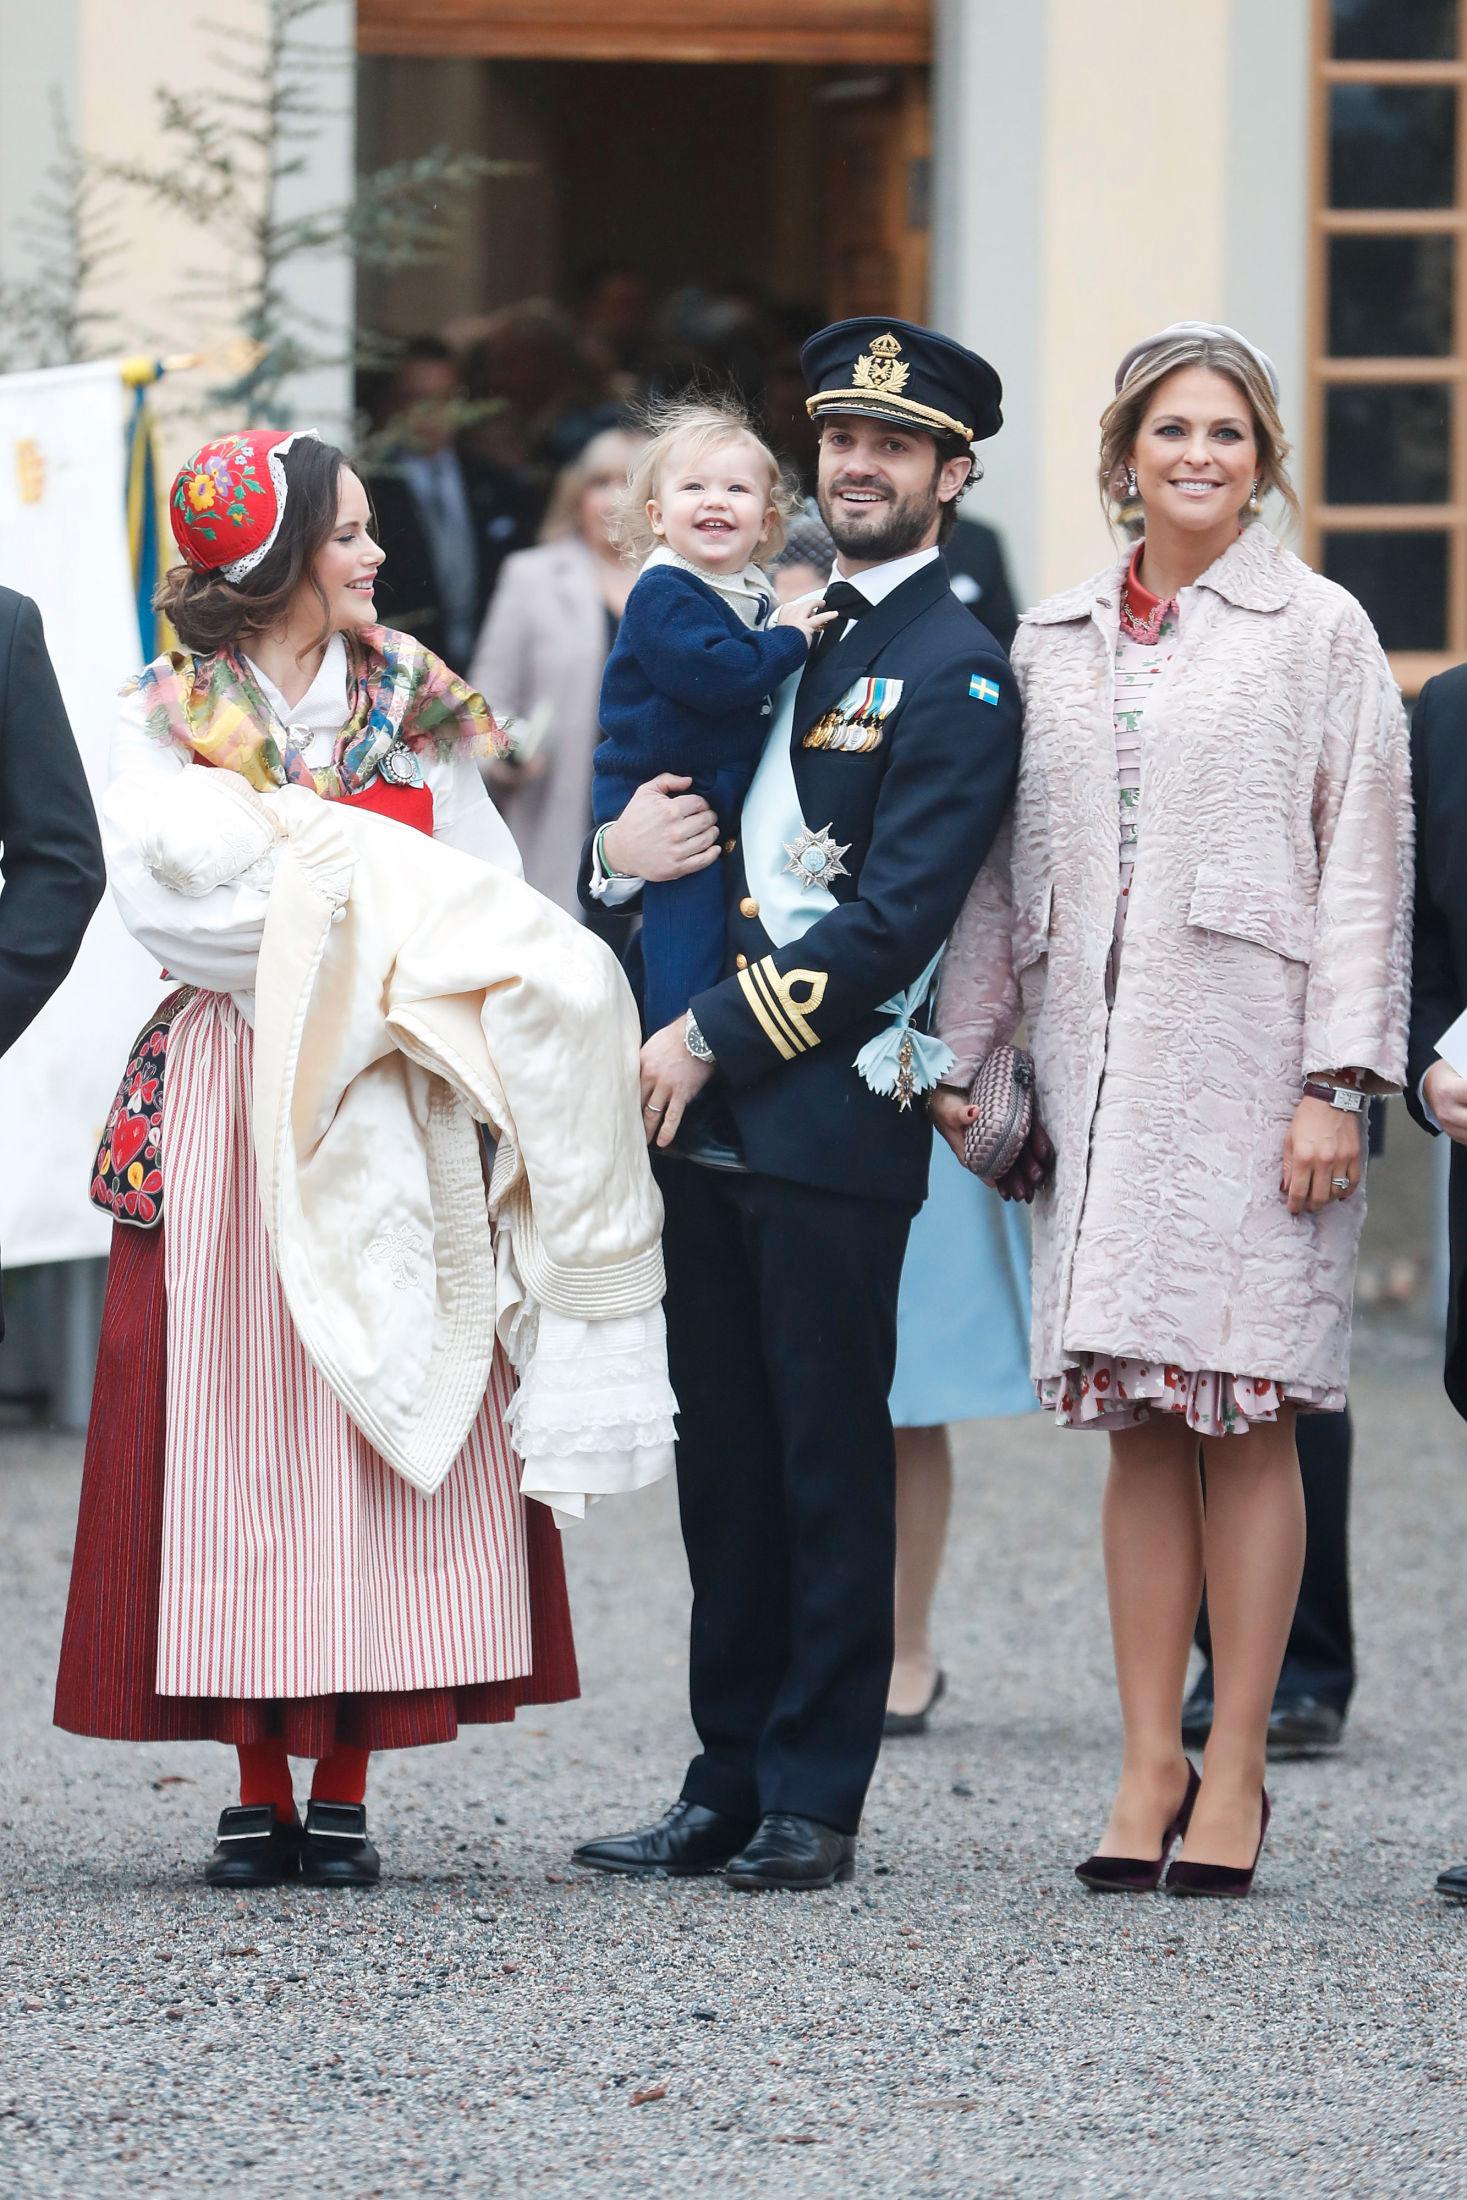 DØPT: Prins Gabriel på armen til prinsesse Sofia, prins Carl Philip med prins Alexander og prinsesse Madeleine etter gudstjenesten. Foto: Getty Images.